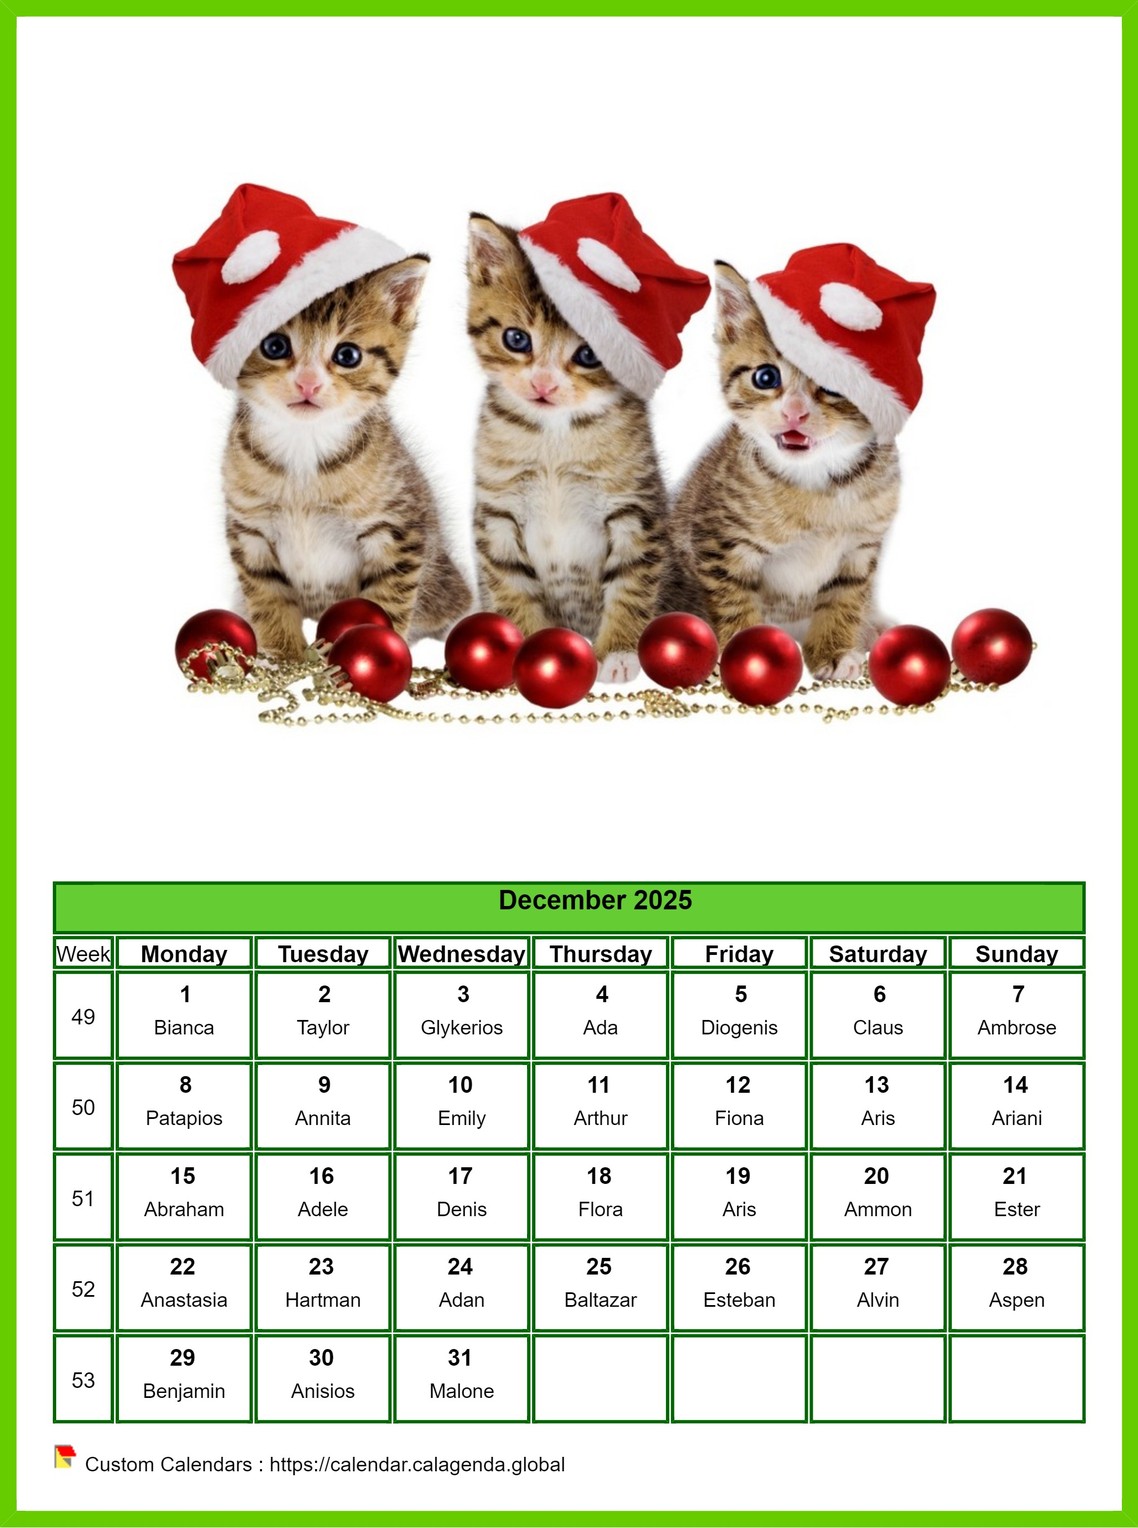 Calendar December 2025 cats